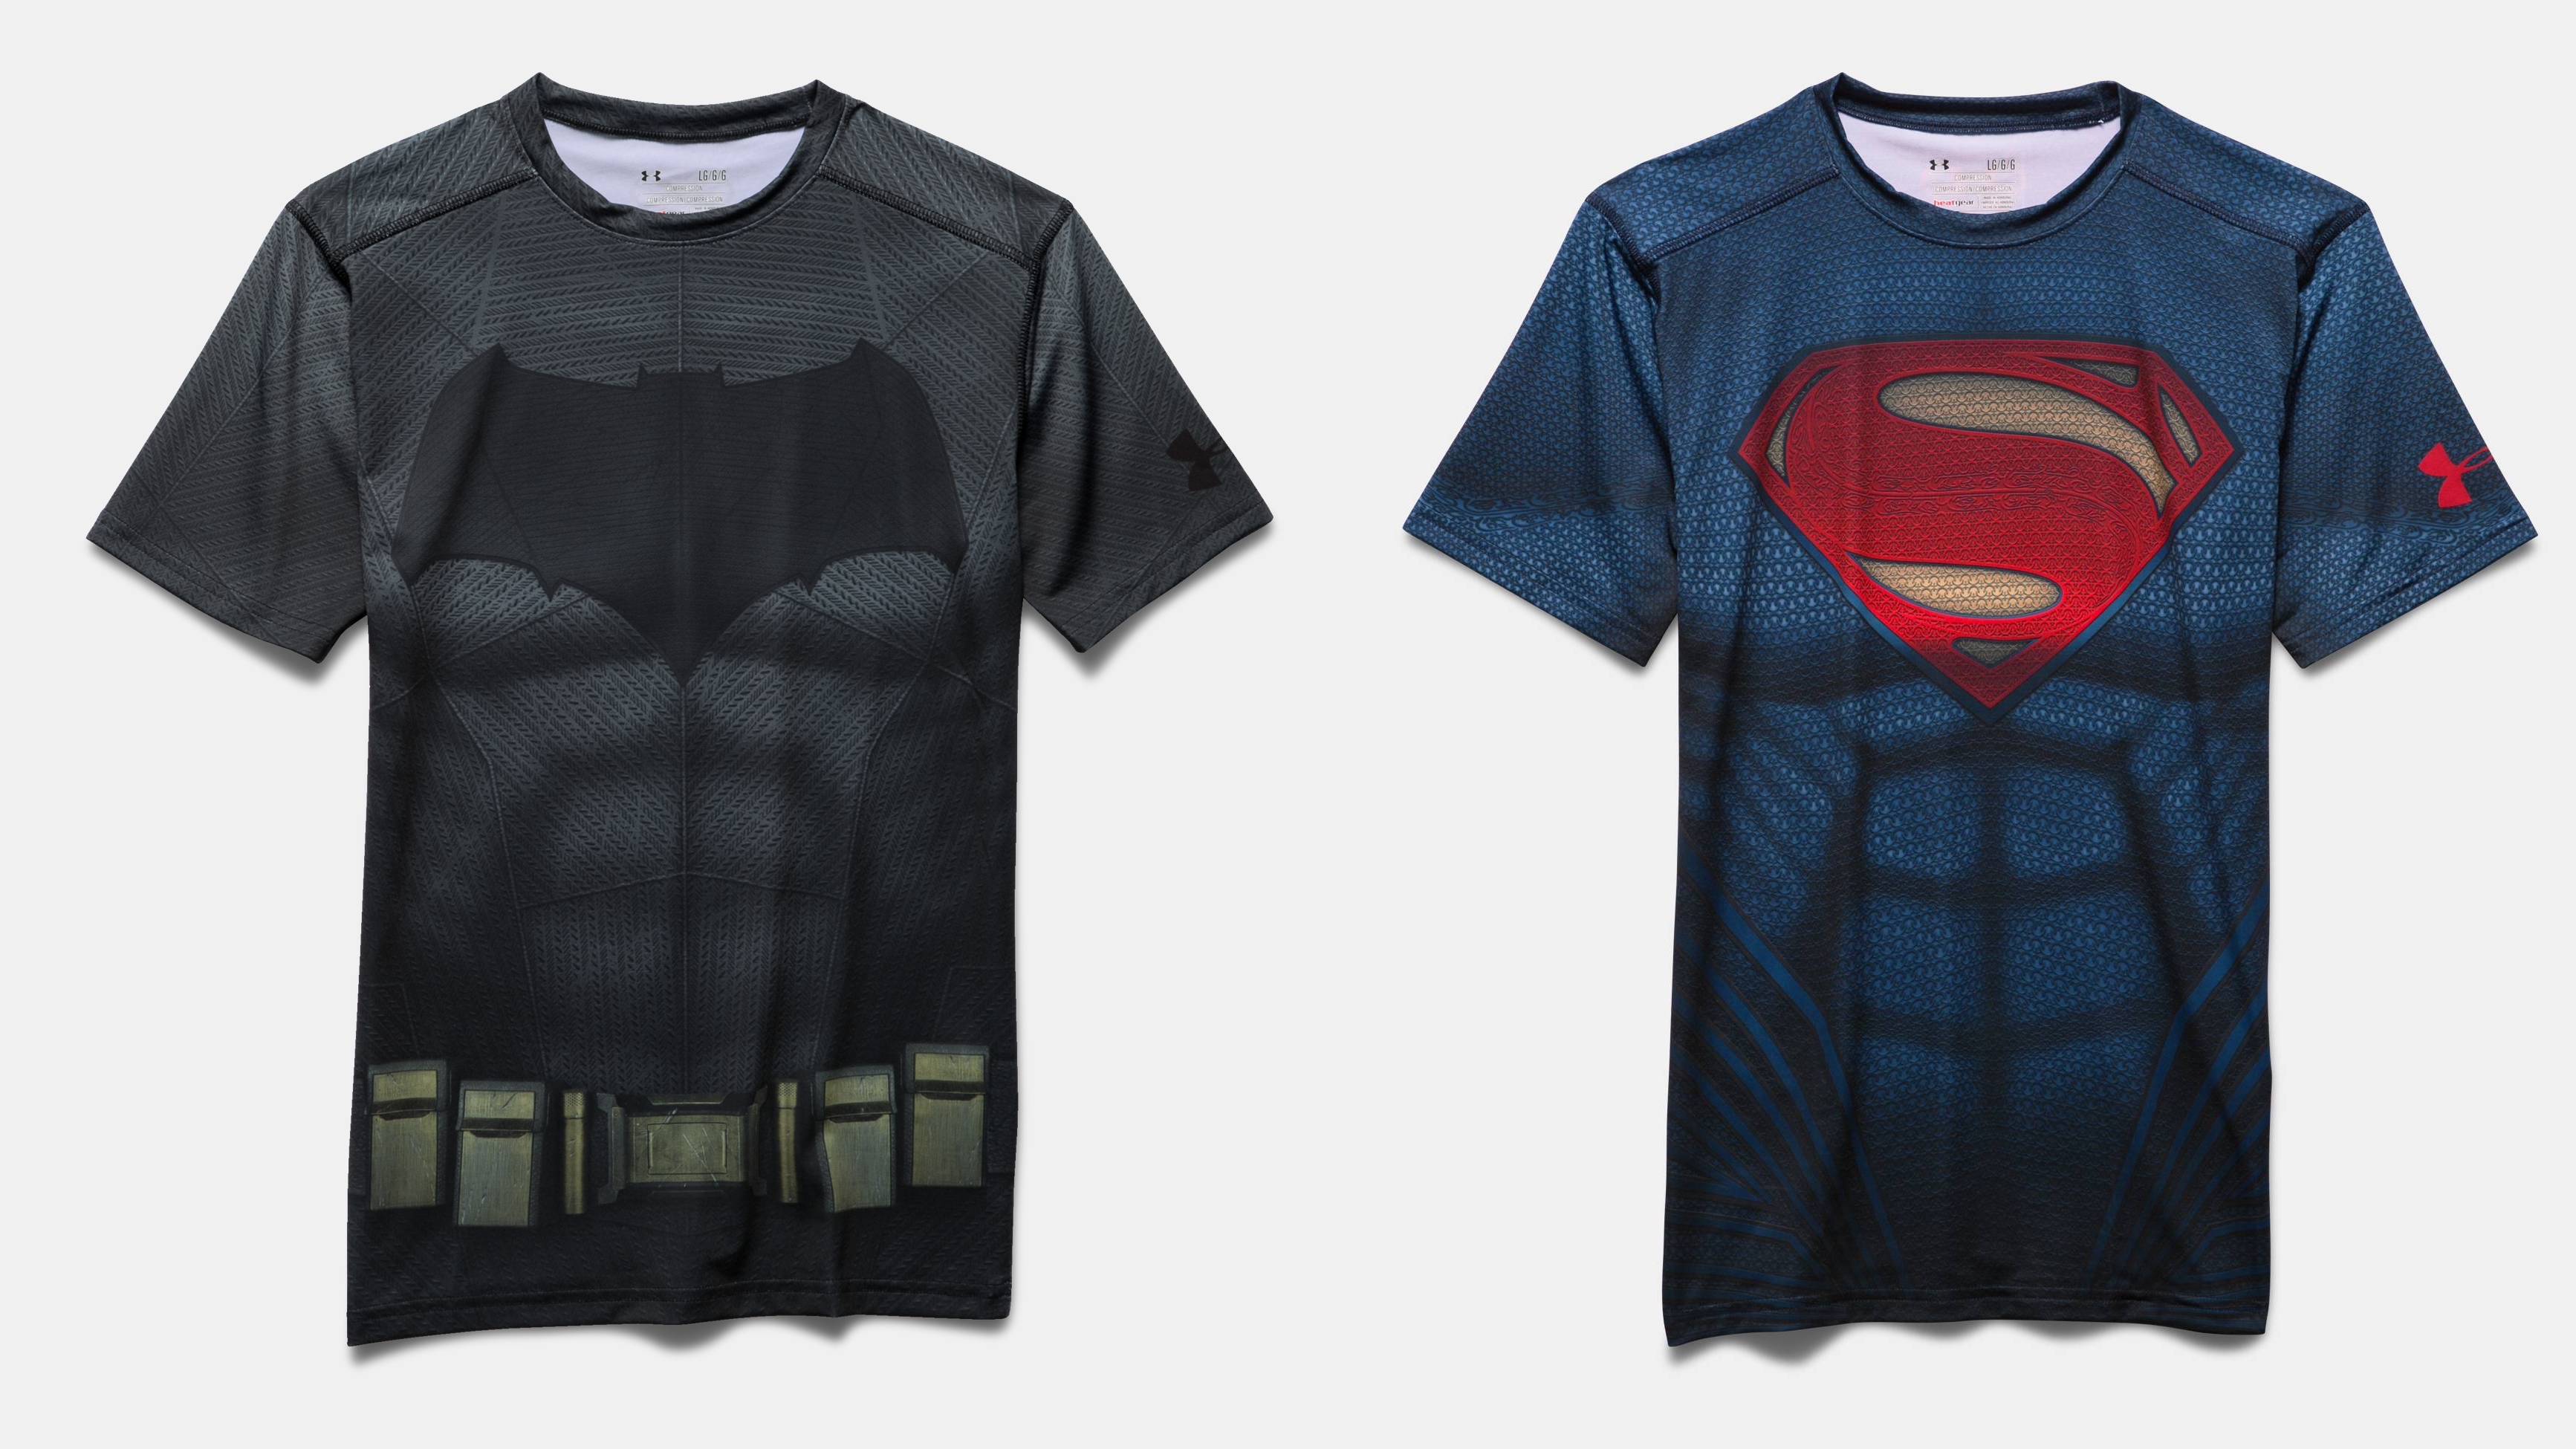 Under Armour launches 'Batman v Superman' merchandise